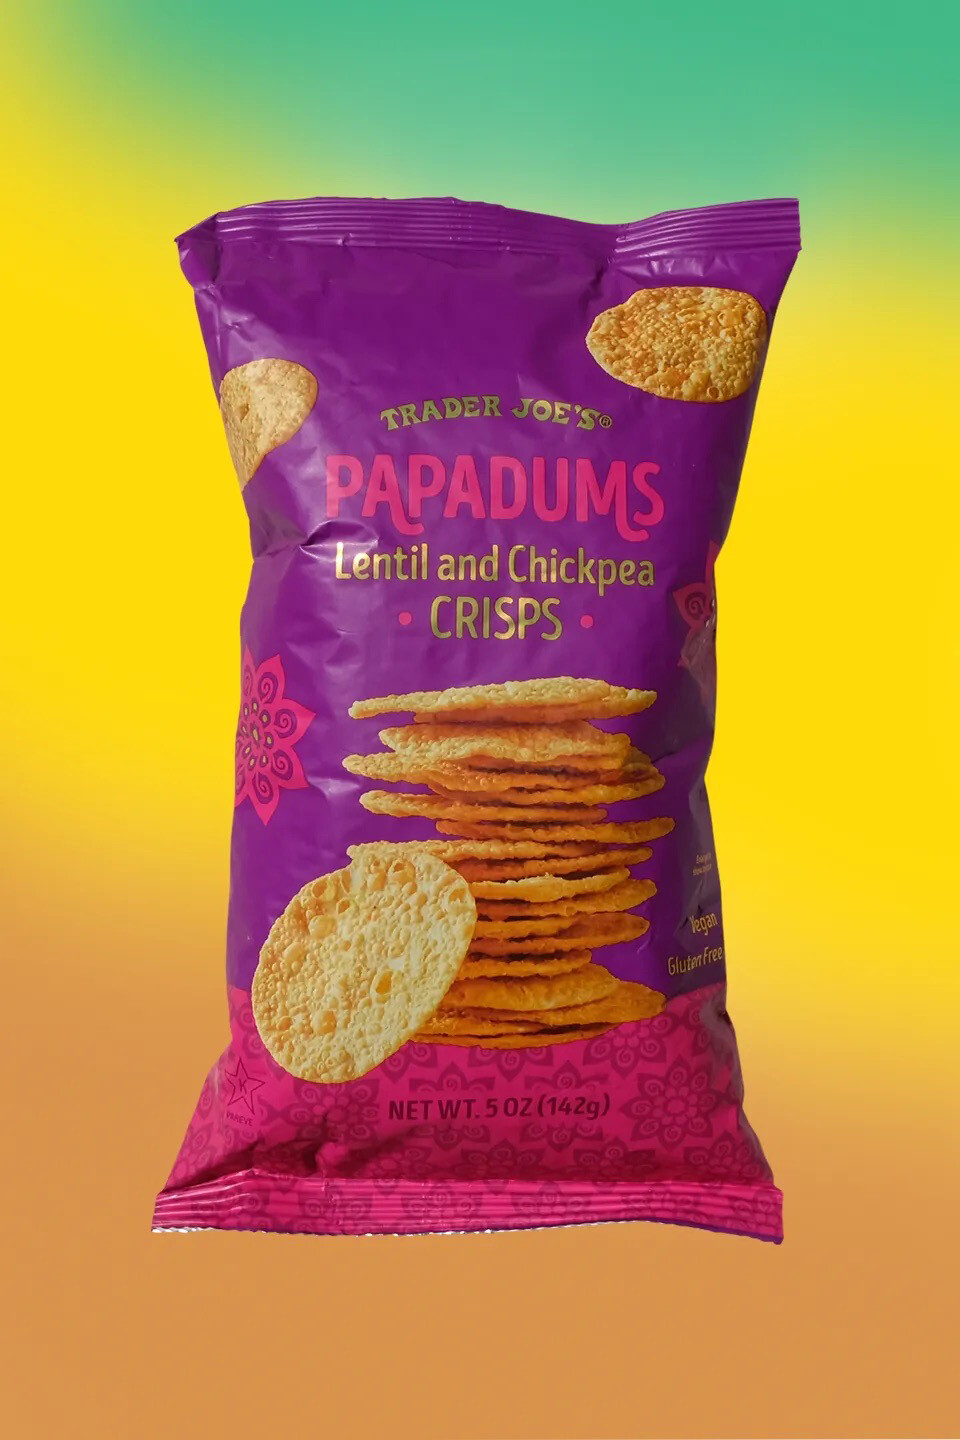 Trader Joe’s Papadums Lentil and Chickpea Crisp 5 oz 